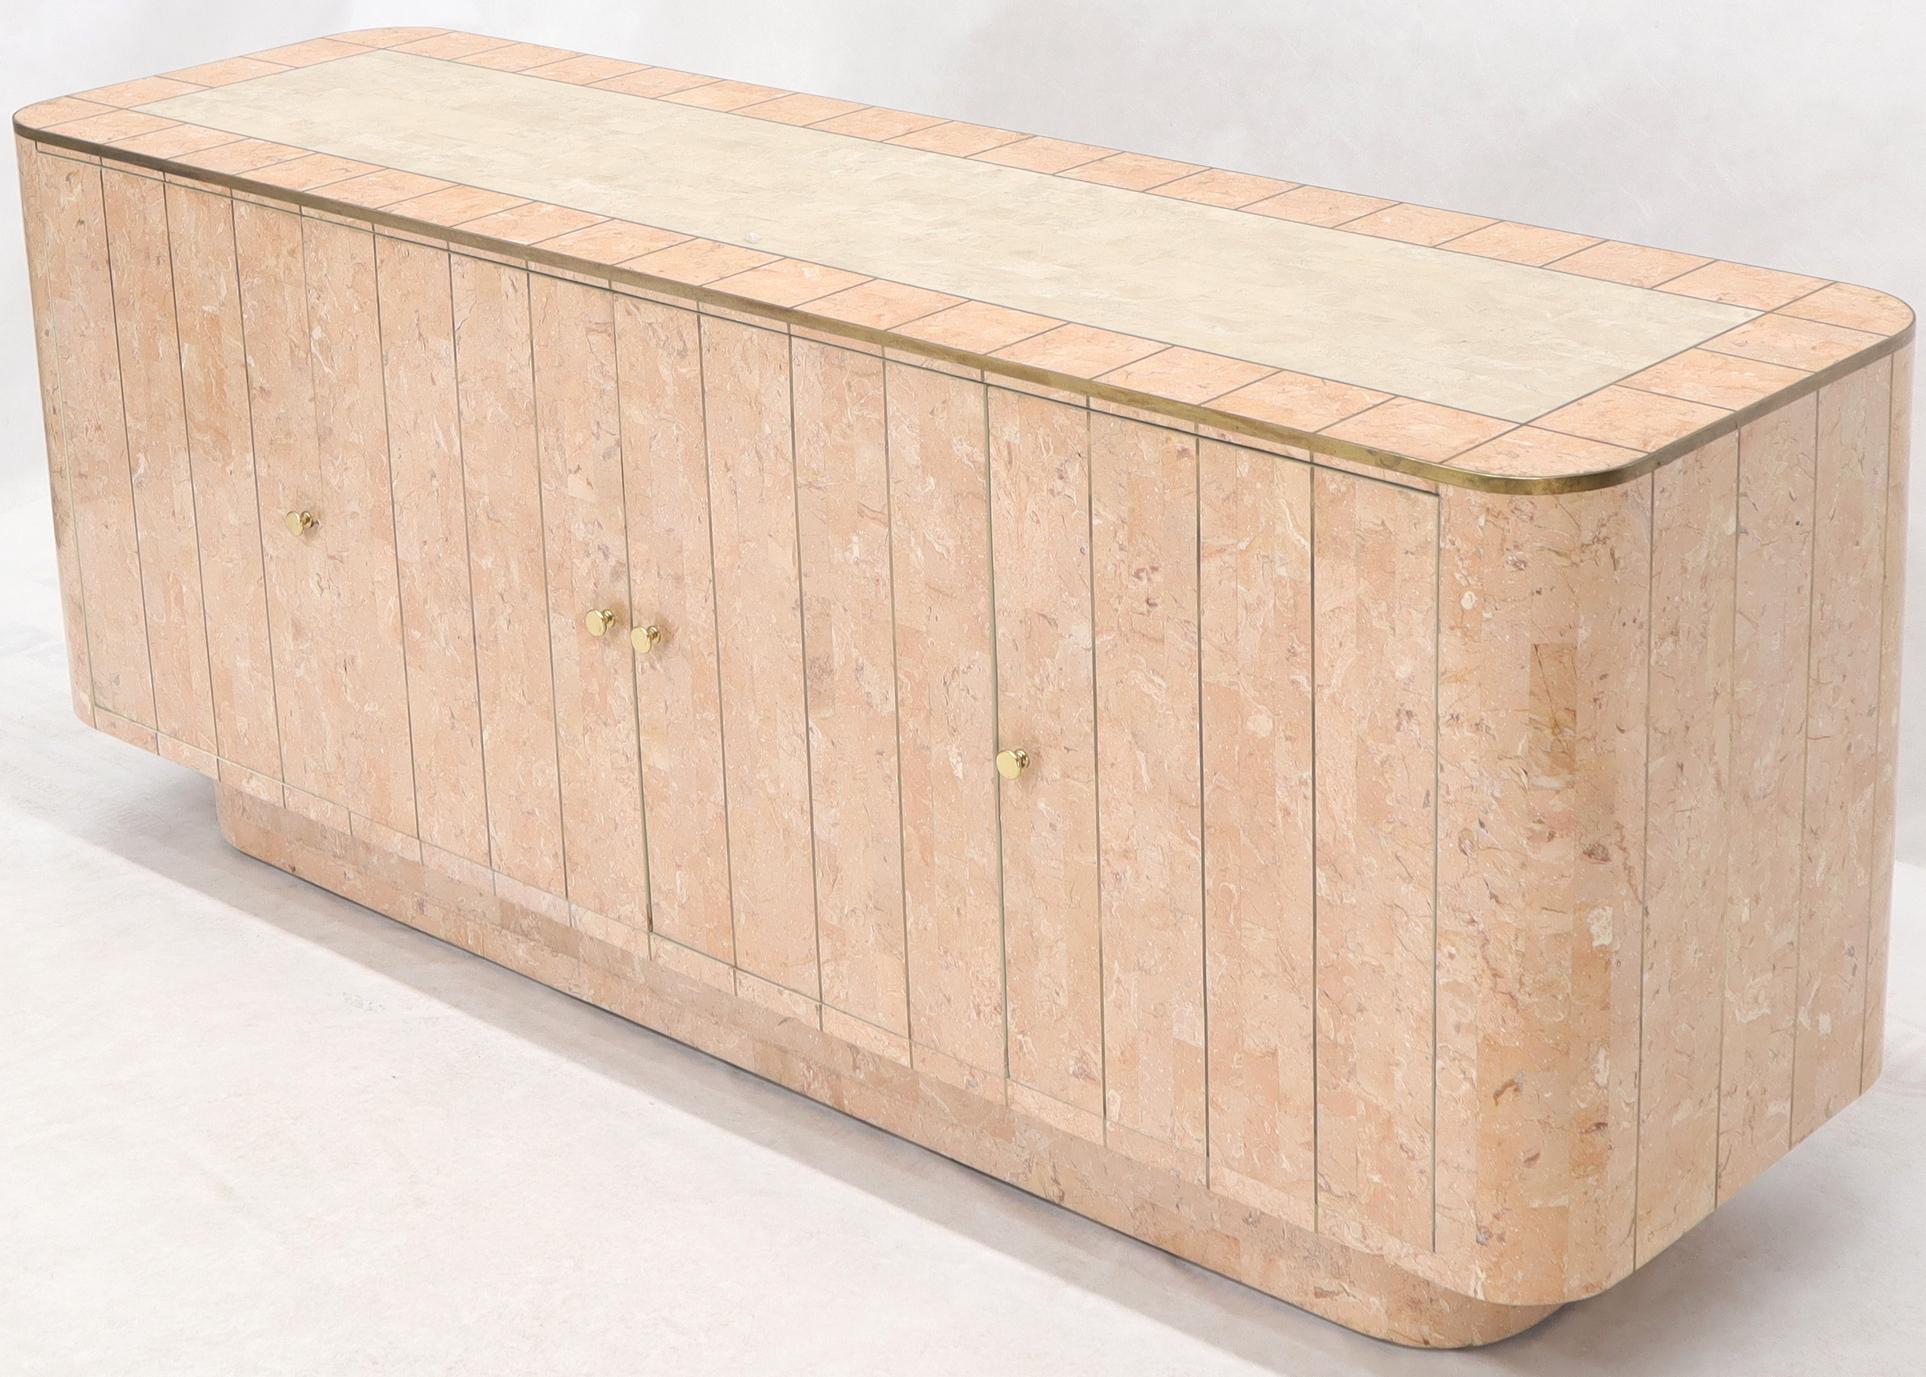 Grand meuble crédence en placage de bois rouge et blanc cassé avec incrustation de laiton, de style moderne du milieu du siècle. Cabinet à l'état et au savoir-faire exceptionnels. Attribué à Maitland Smith.